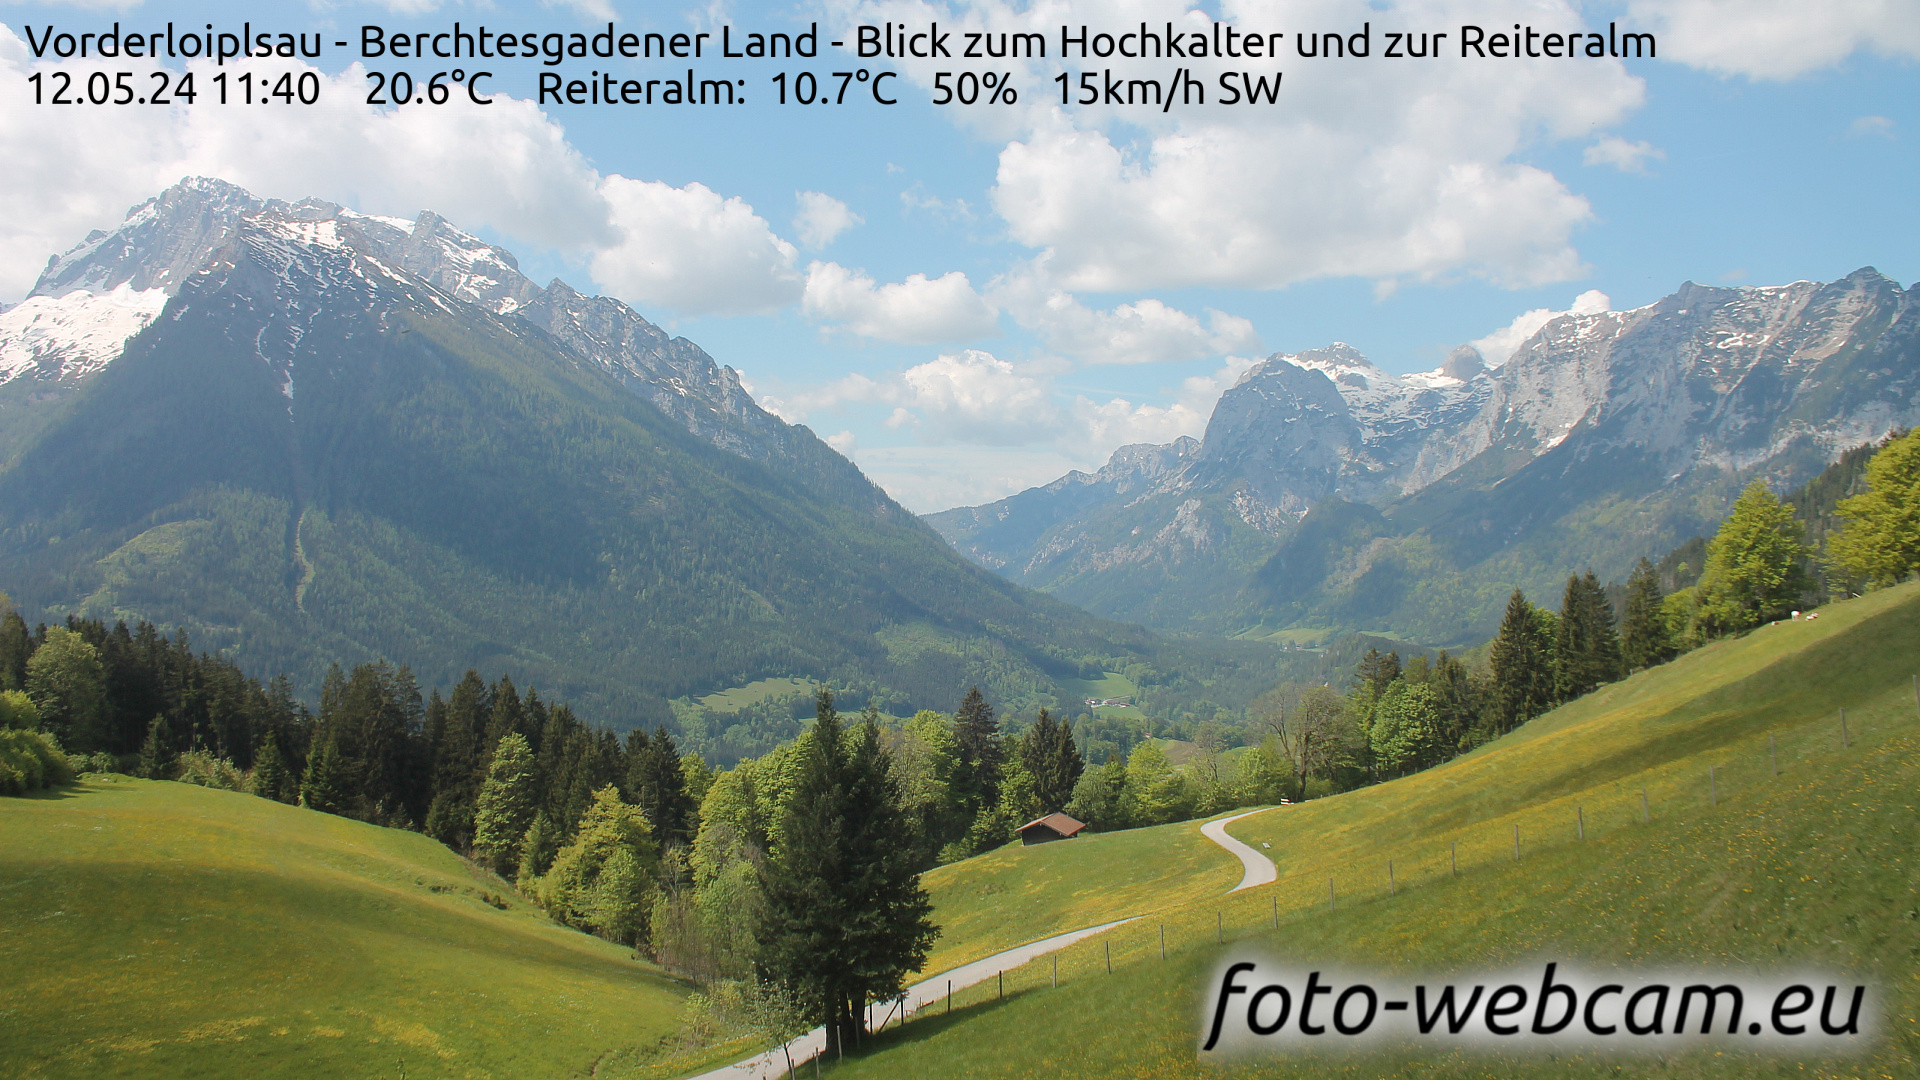 Ramsau bei Berchtesgaden Tor. 11:48